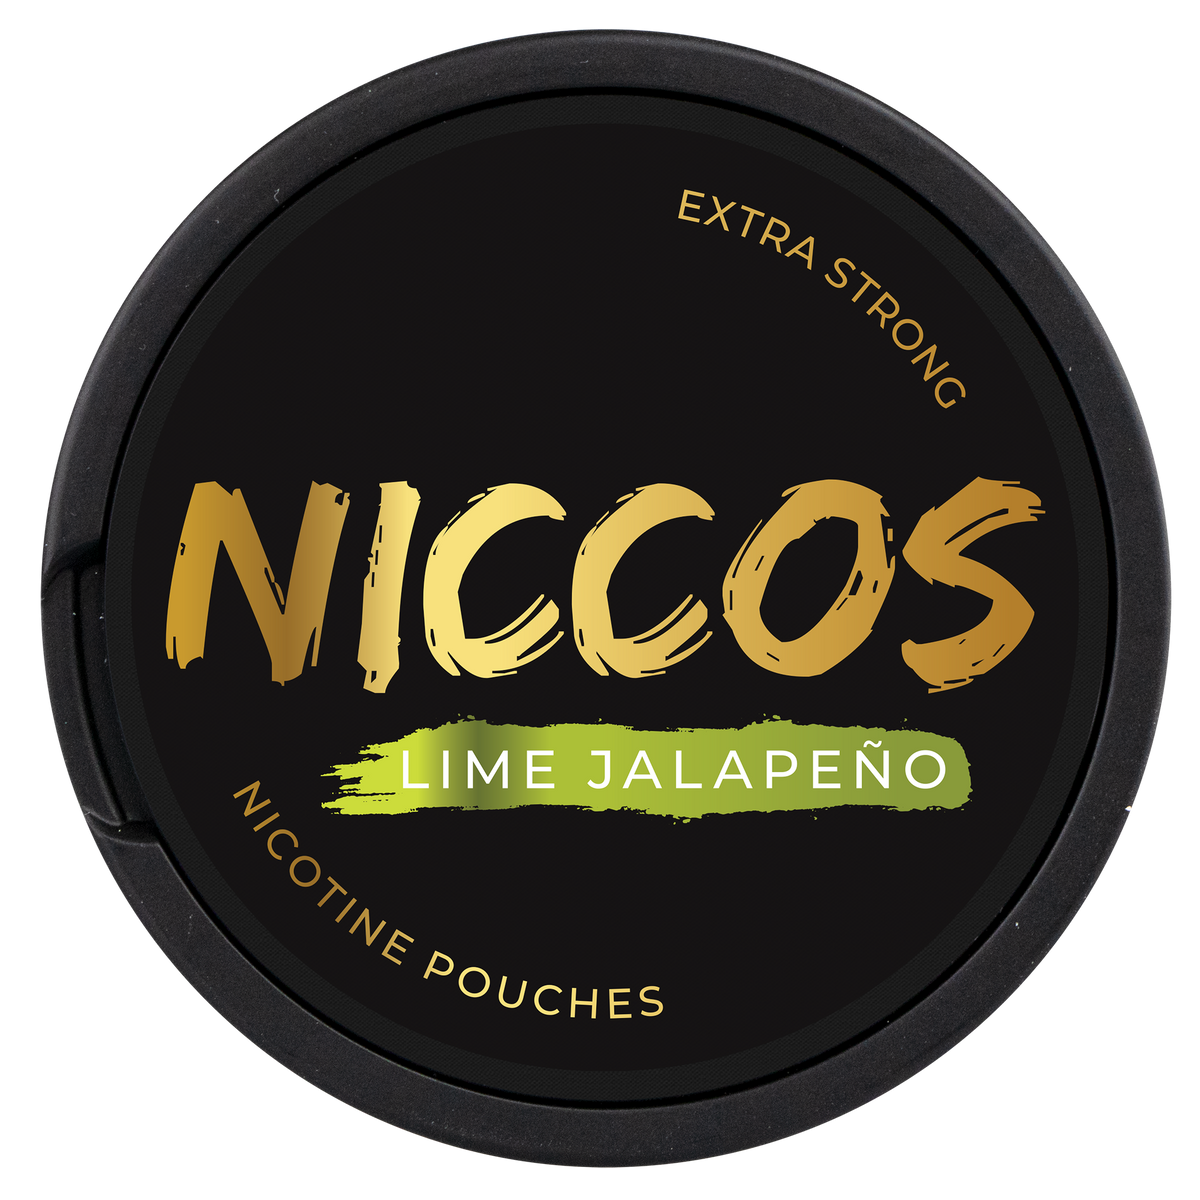 NICCOS Lime Jalapeño